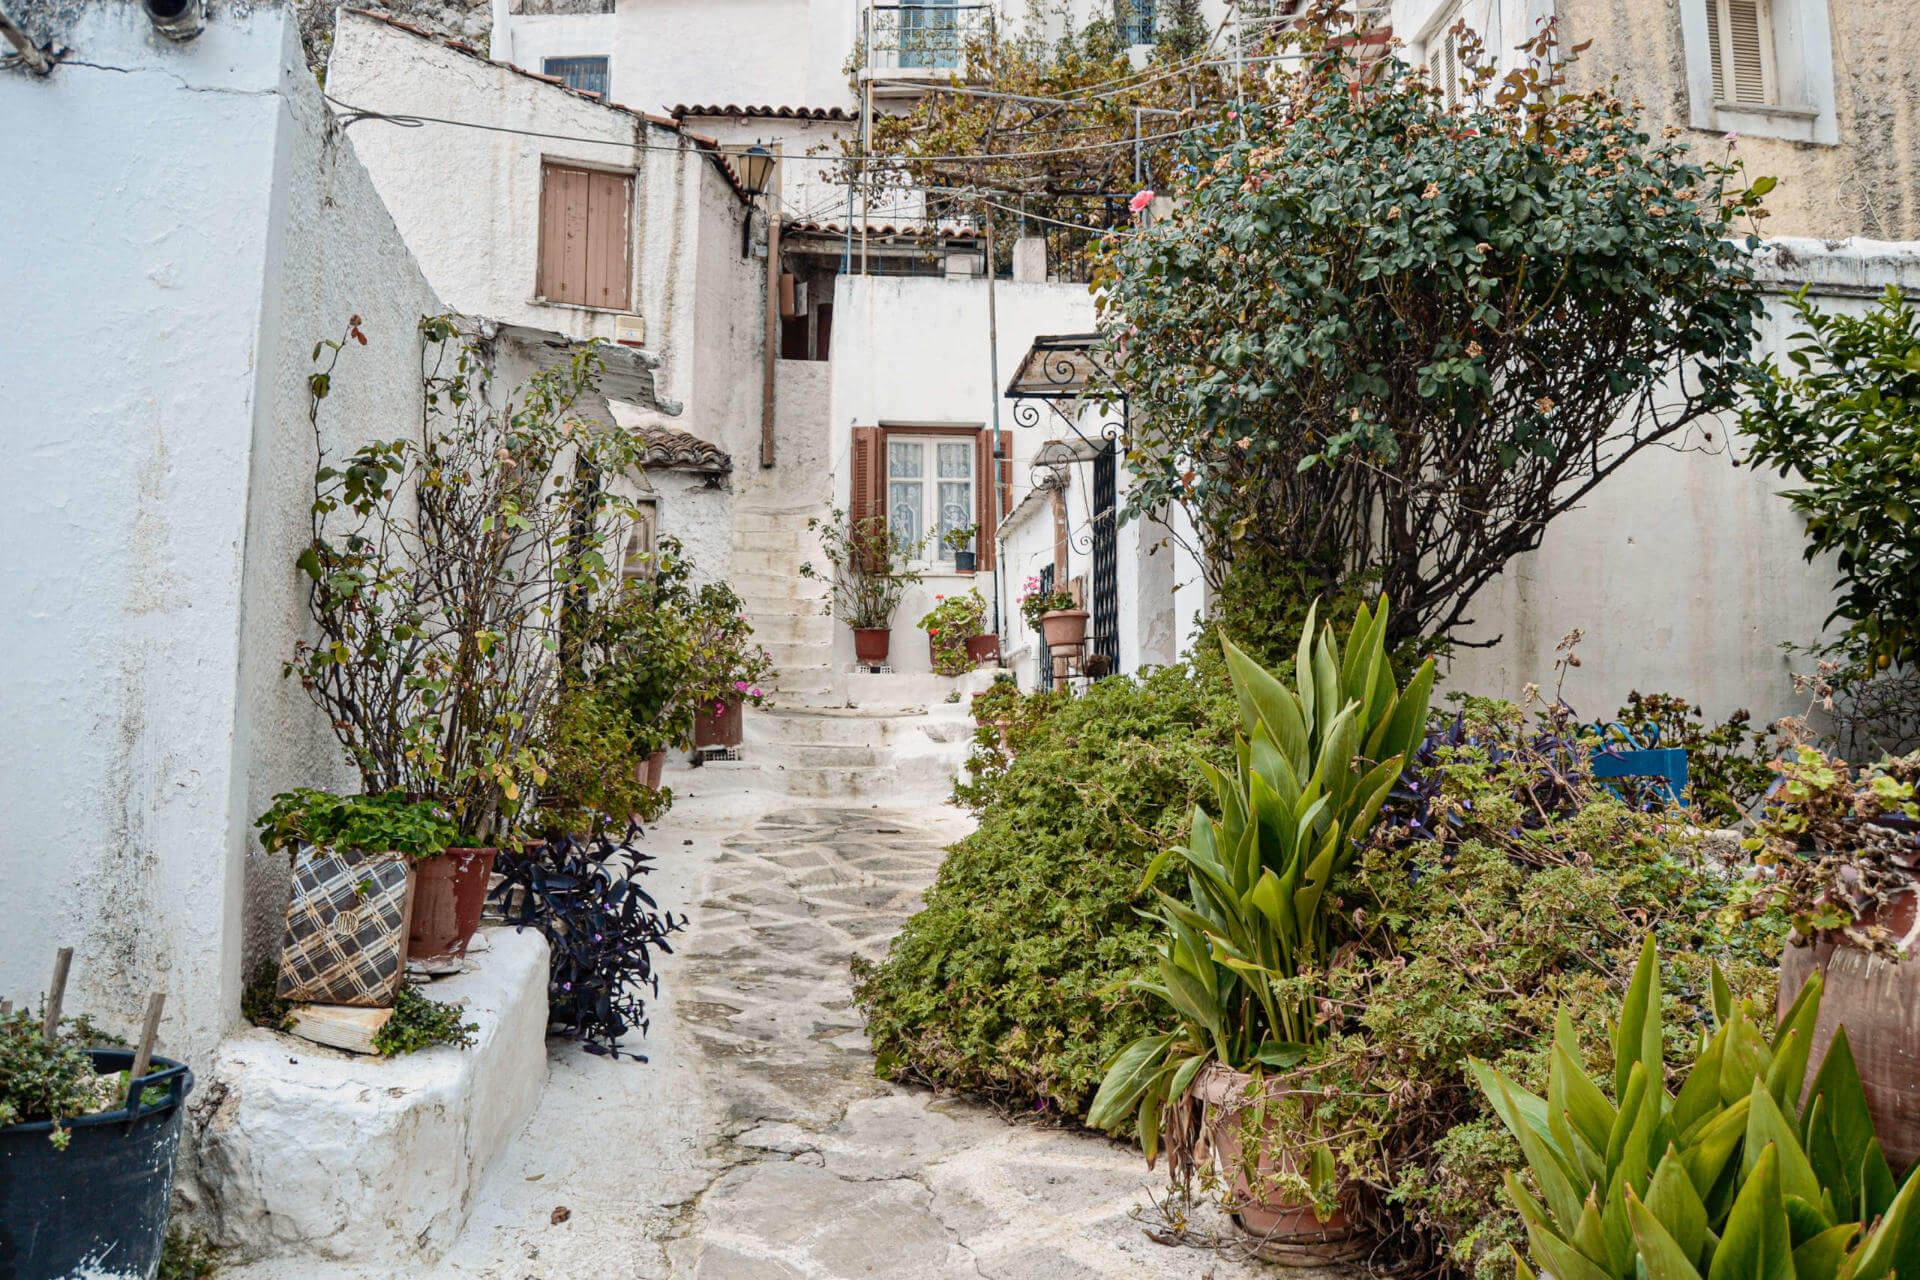 Enge, steile Gasse aus landestypischen, weiß gestrichenen Häusern mit grüner Bepflanzung in Athens Kykladendorf Anafiotika.